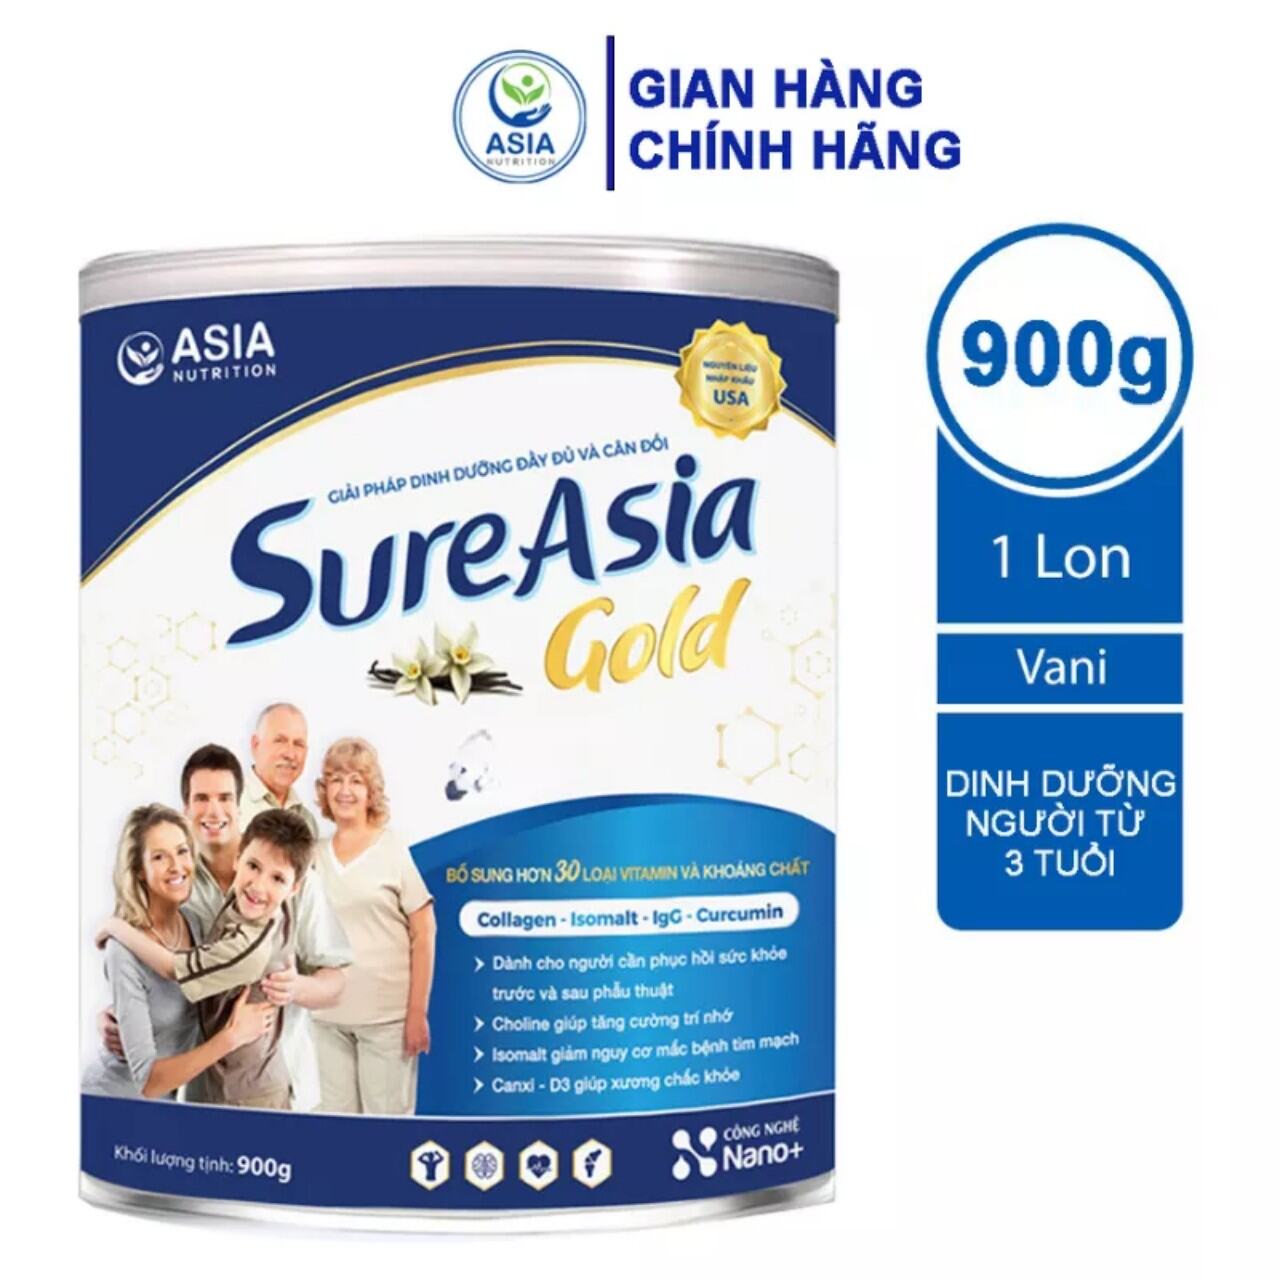 Sữa SureAsia Gold 900g, bổ cơ xương khớp, giảm cholesterol trong máu